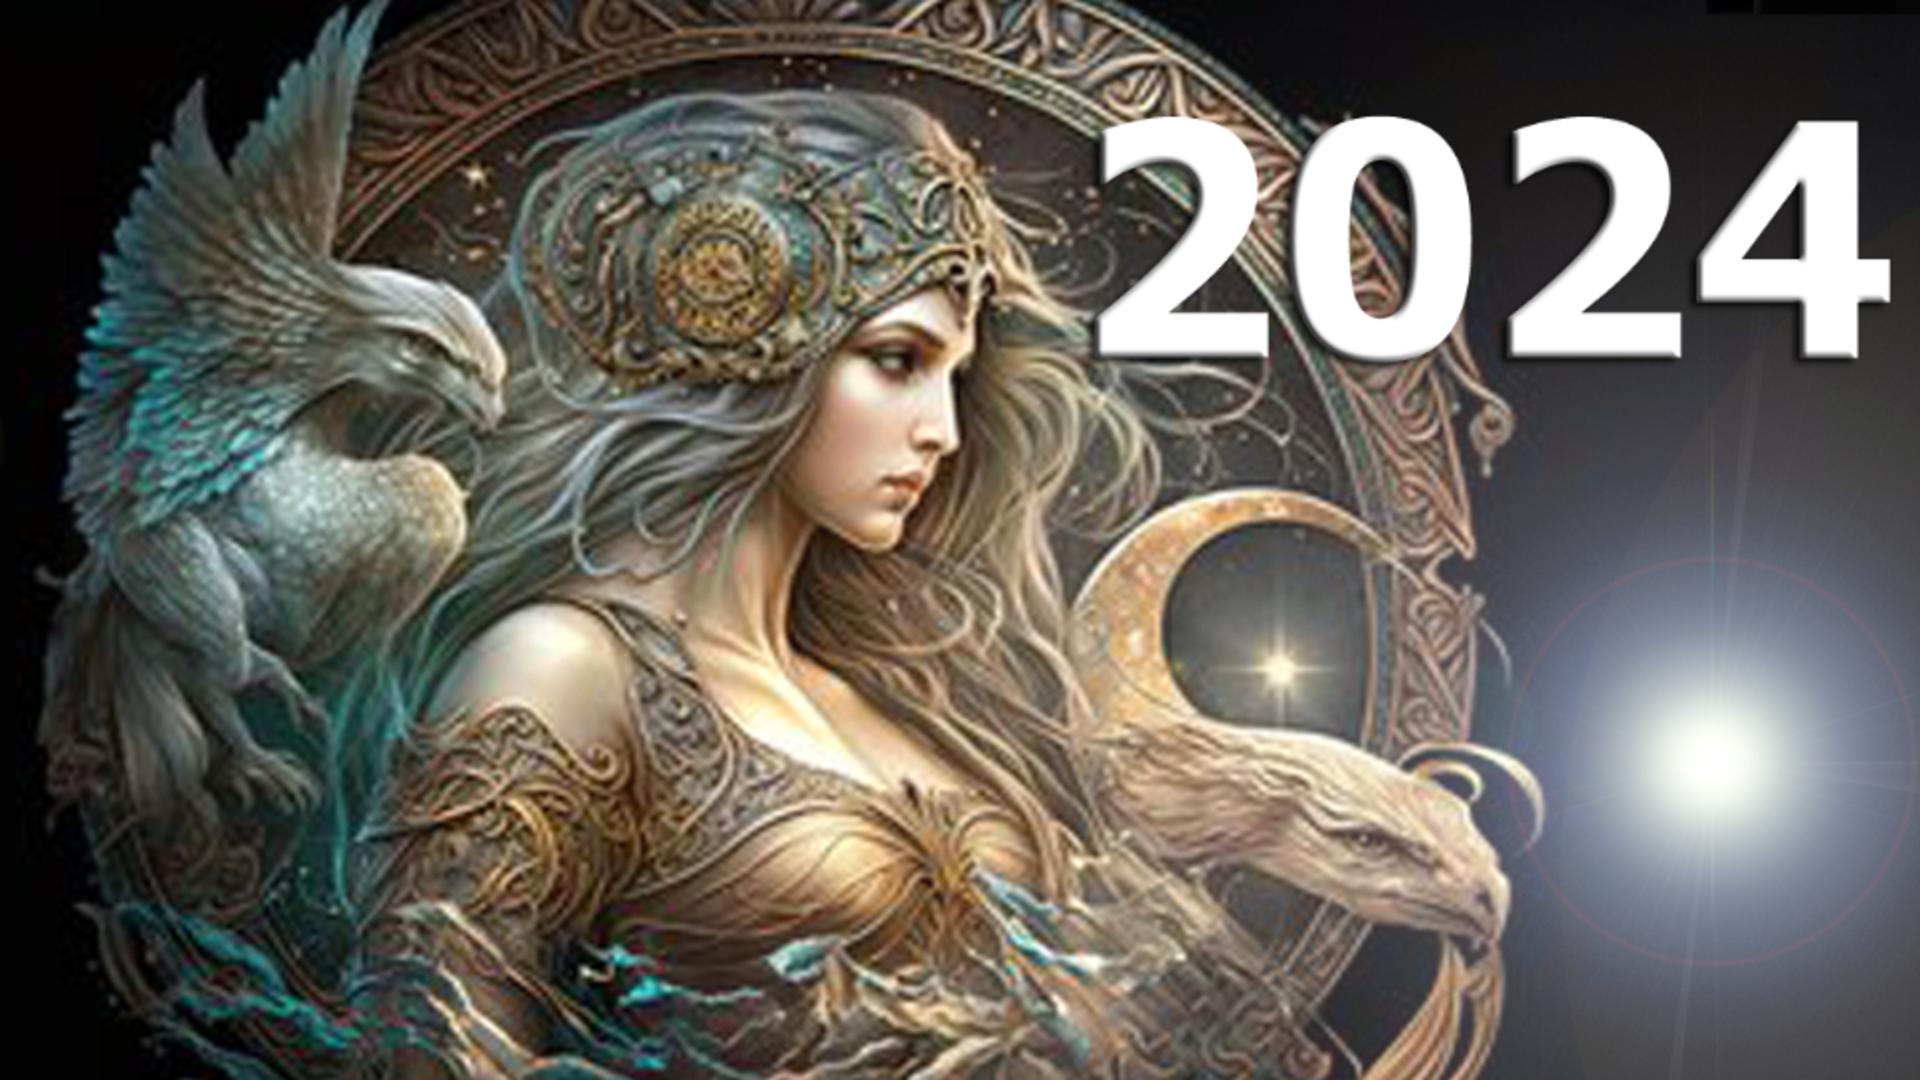 Horoscopul anului 2024 – Fecioară. Astrele îți dau curaj în dragoste. Situația financiară se stabilizează